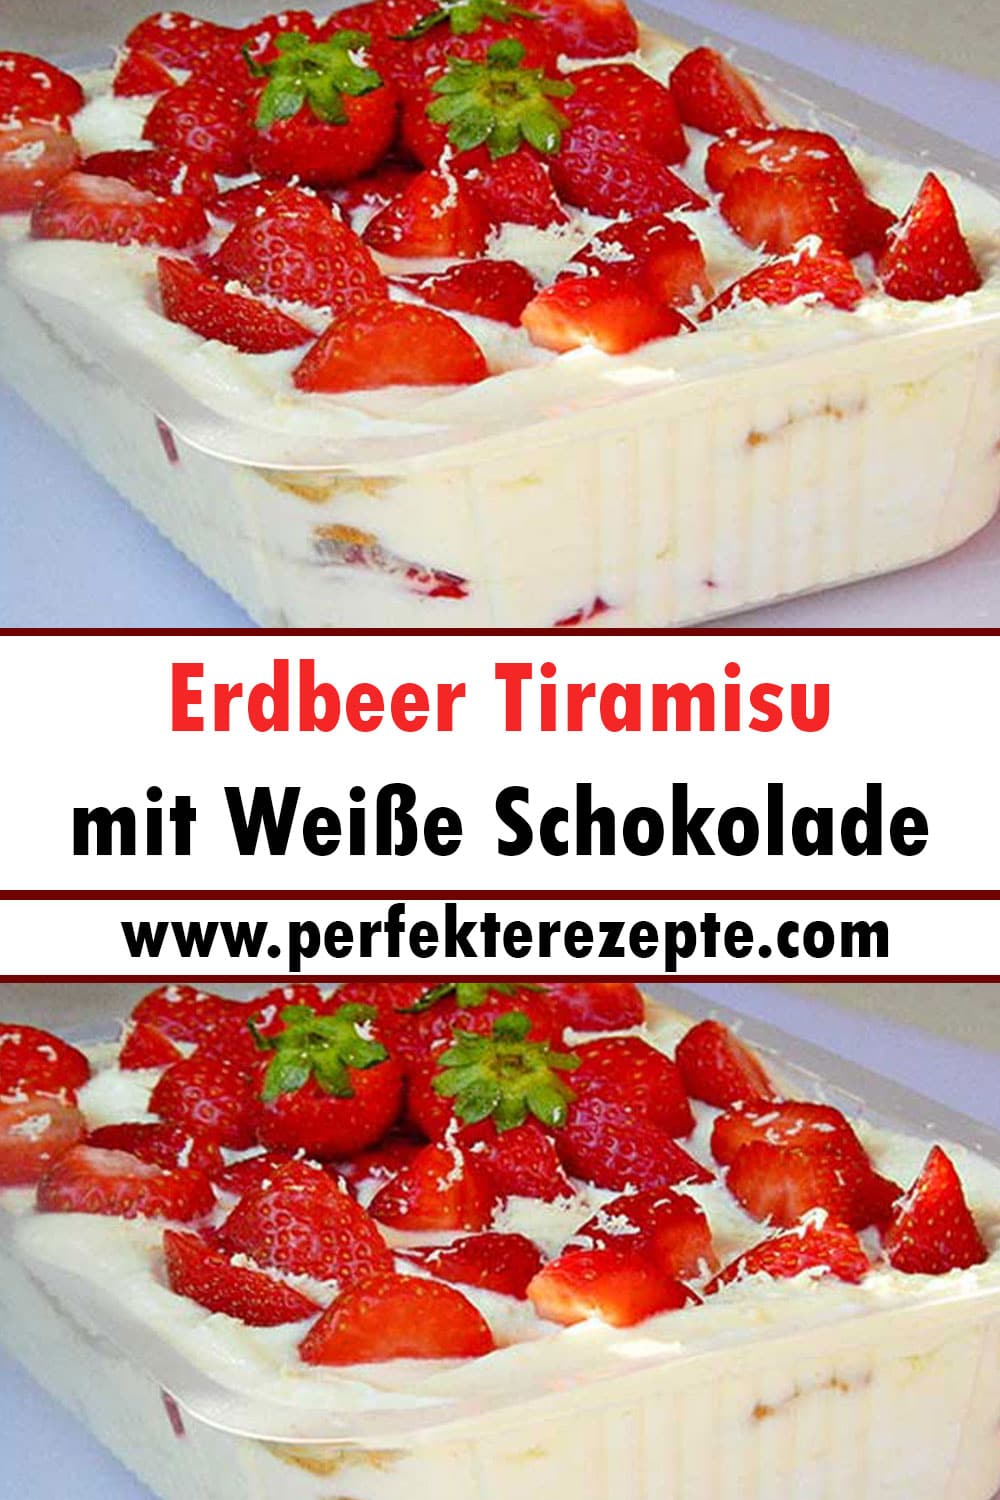 Erdbeer Tiramisu mit Weiße Schokolade Rezept